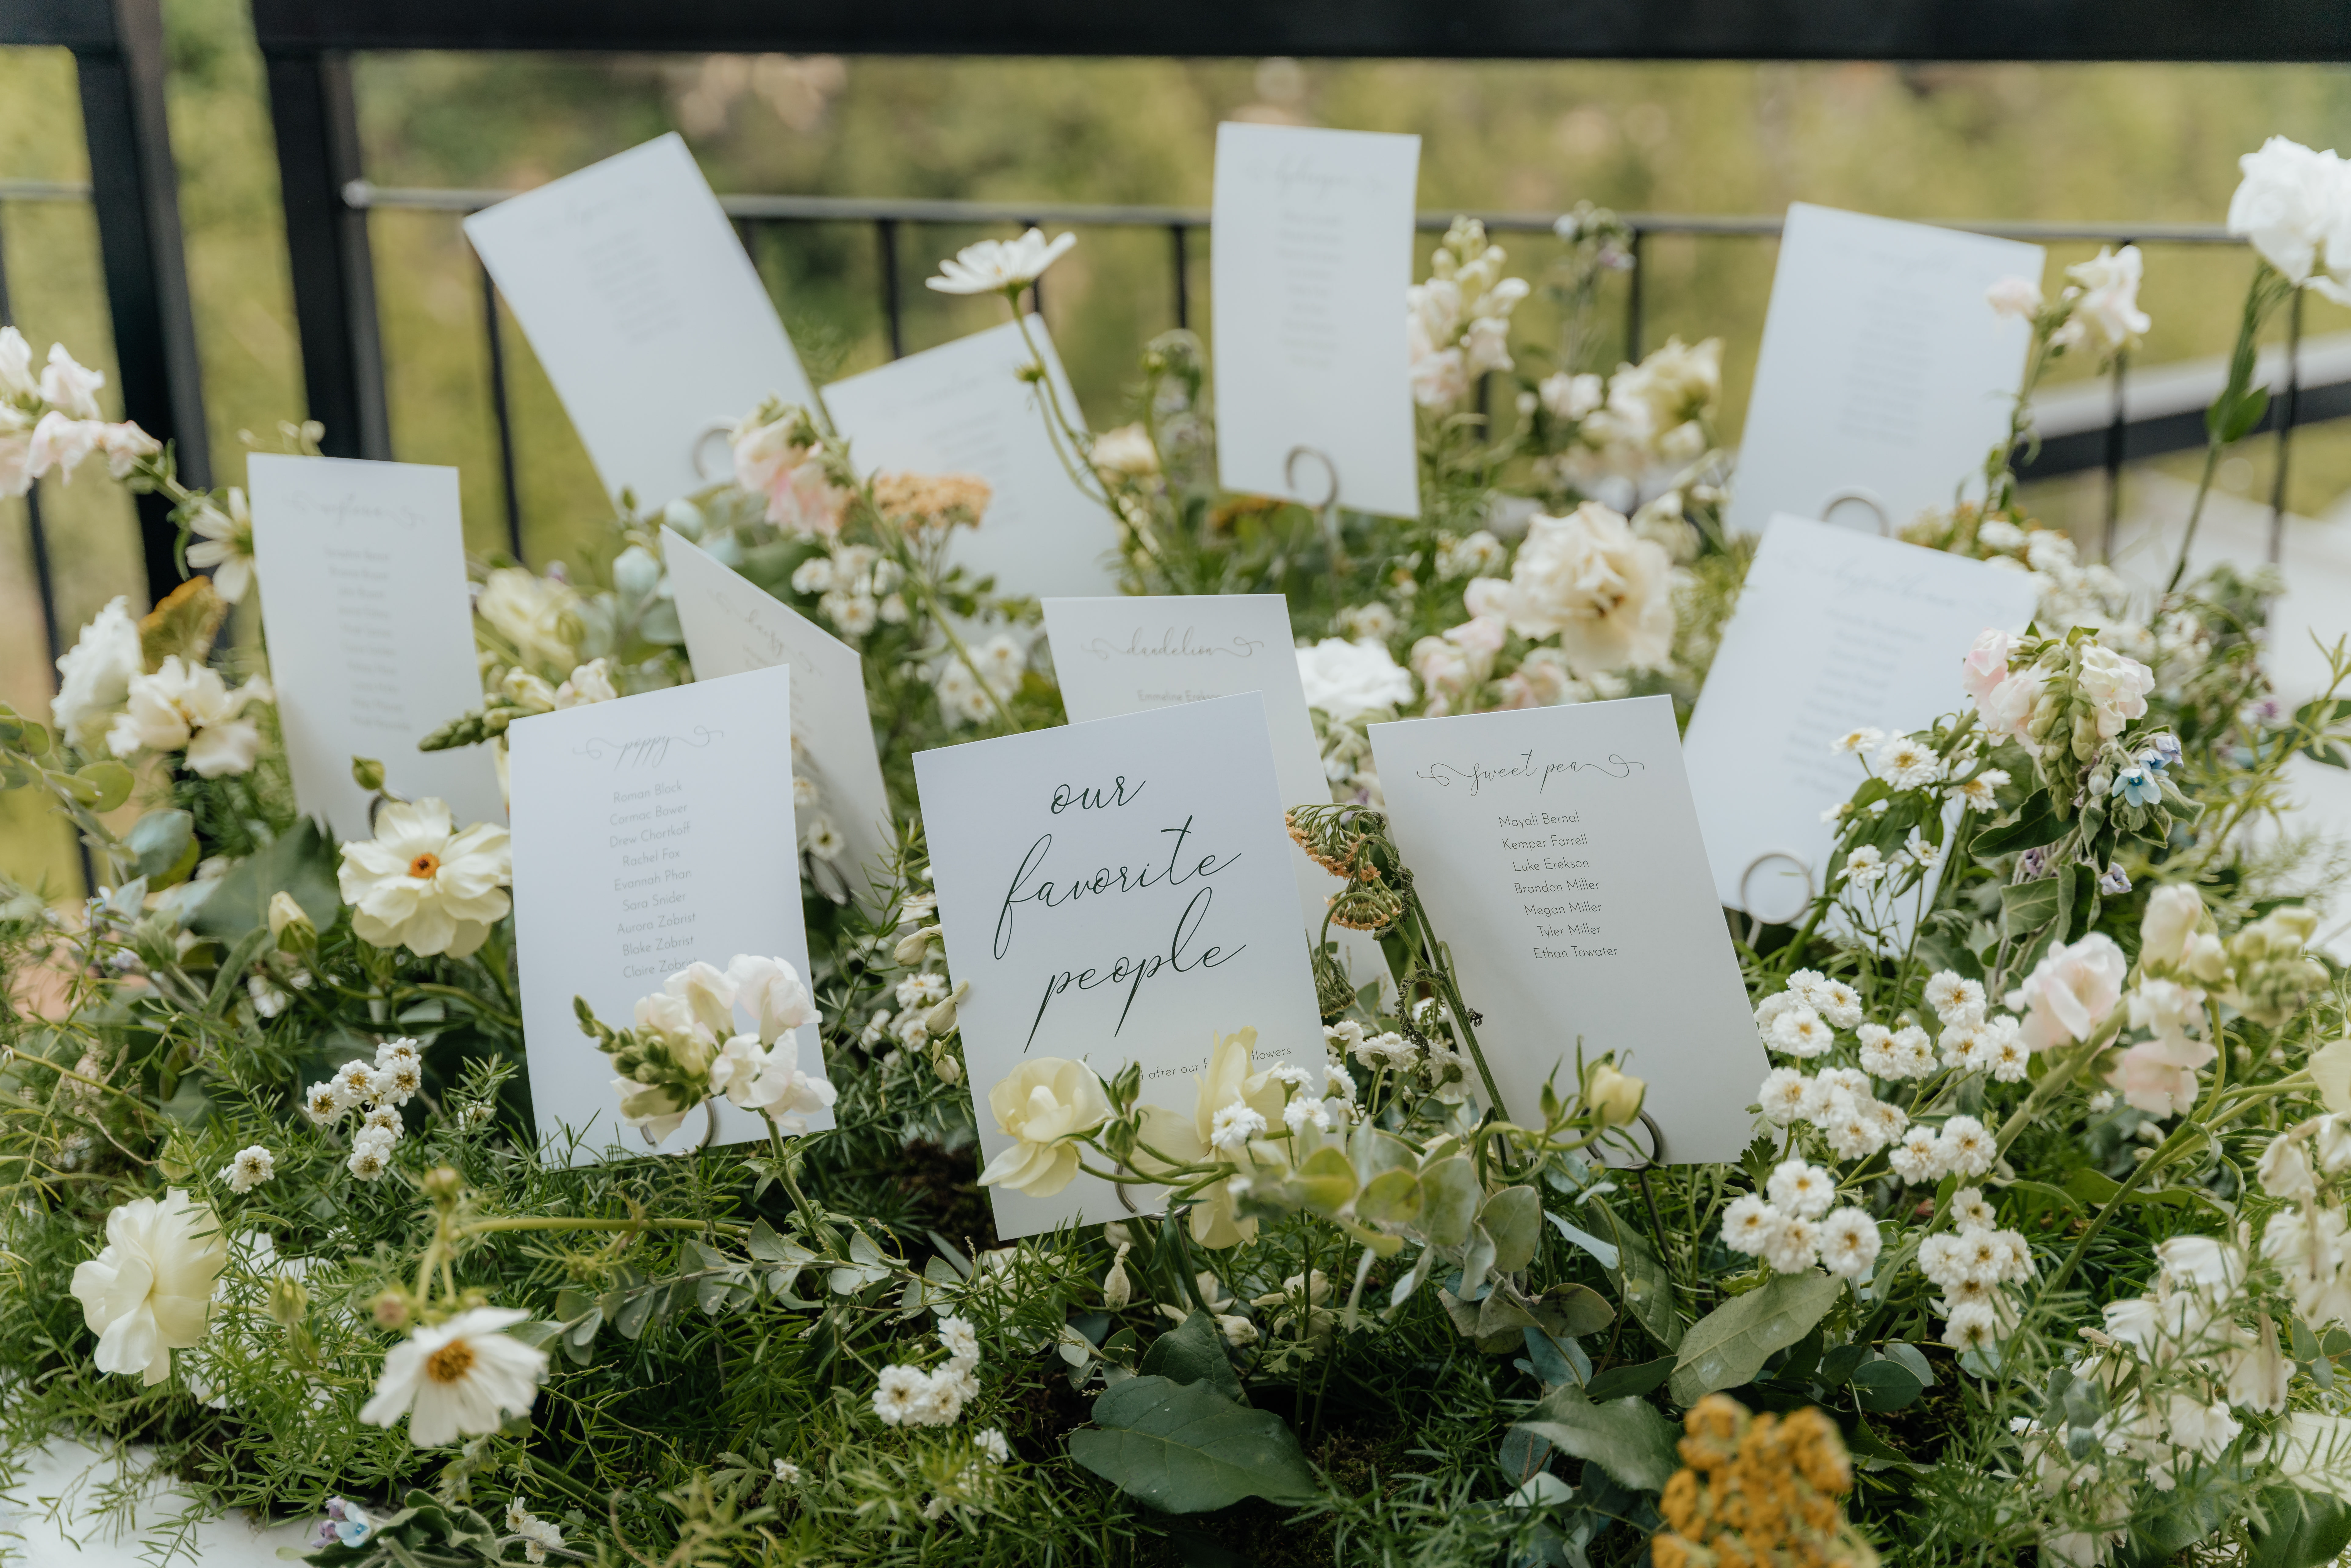 Wildflower wedding details, escort cards